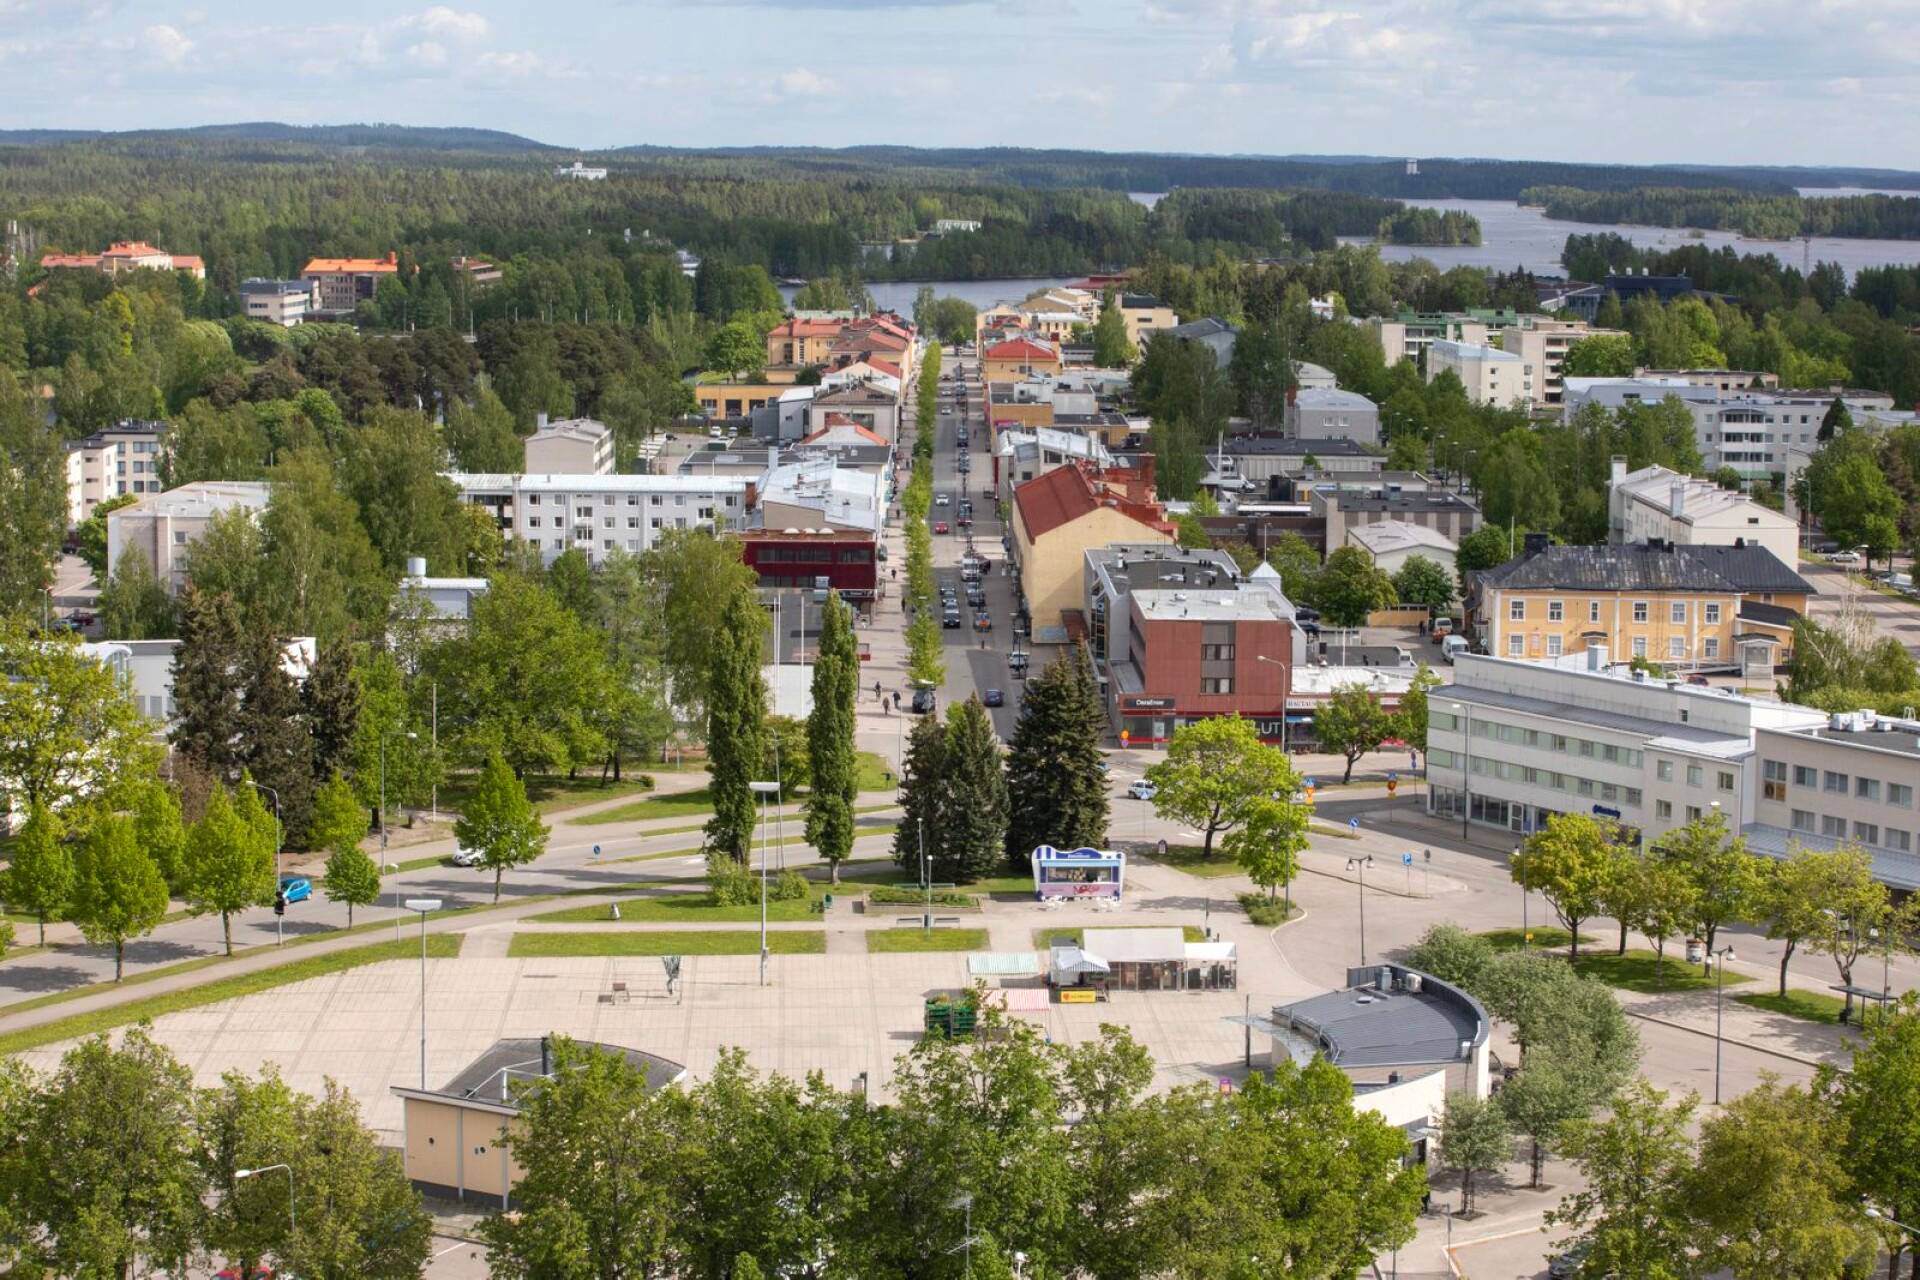 Varkauden keskustassa on rauhallista. Monissa Itä-Suomen kunnissa ja kaupungeissa on vesistöjä lähellä. Niillä on tärkeä merkitys paitsi teollisuudelle ja asukkaiden vapaa-ajan aktiviteeteille myös matkailijoille.